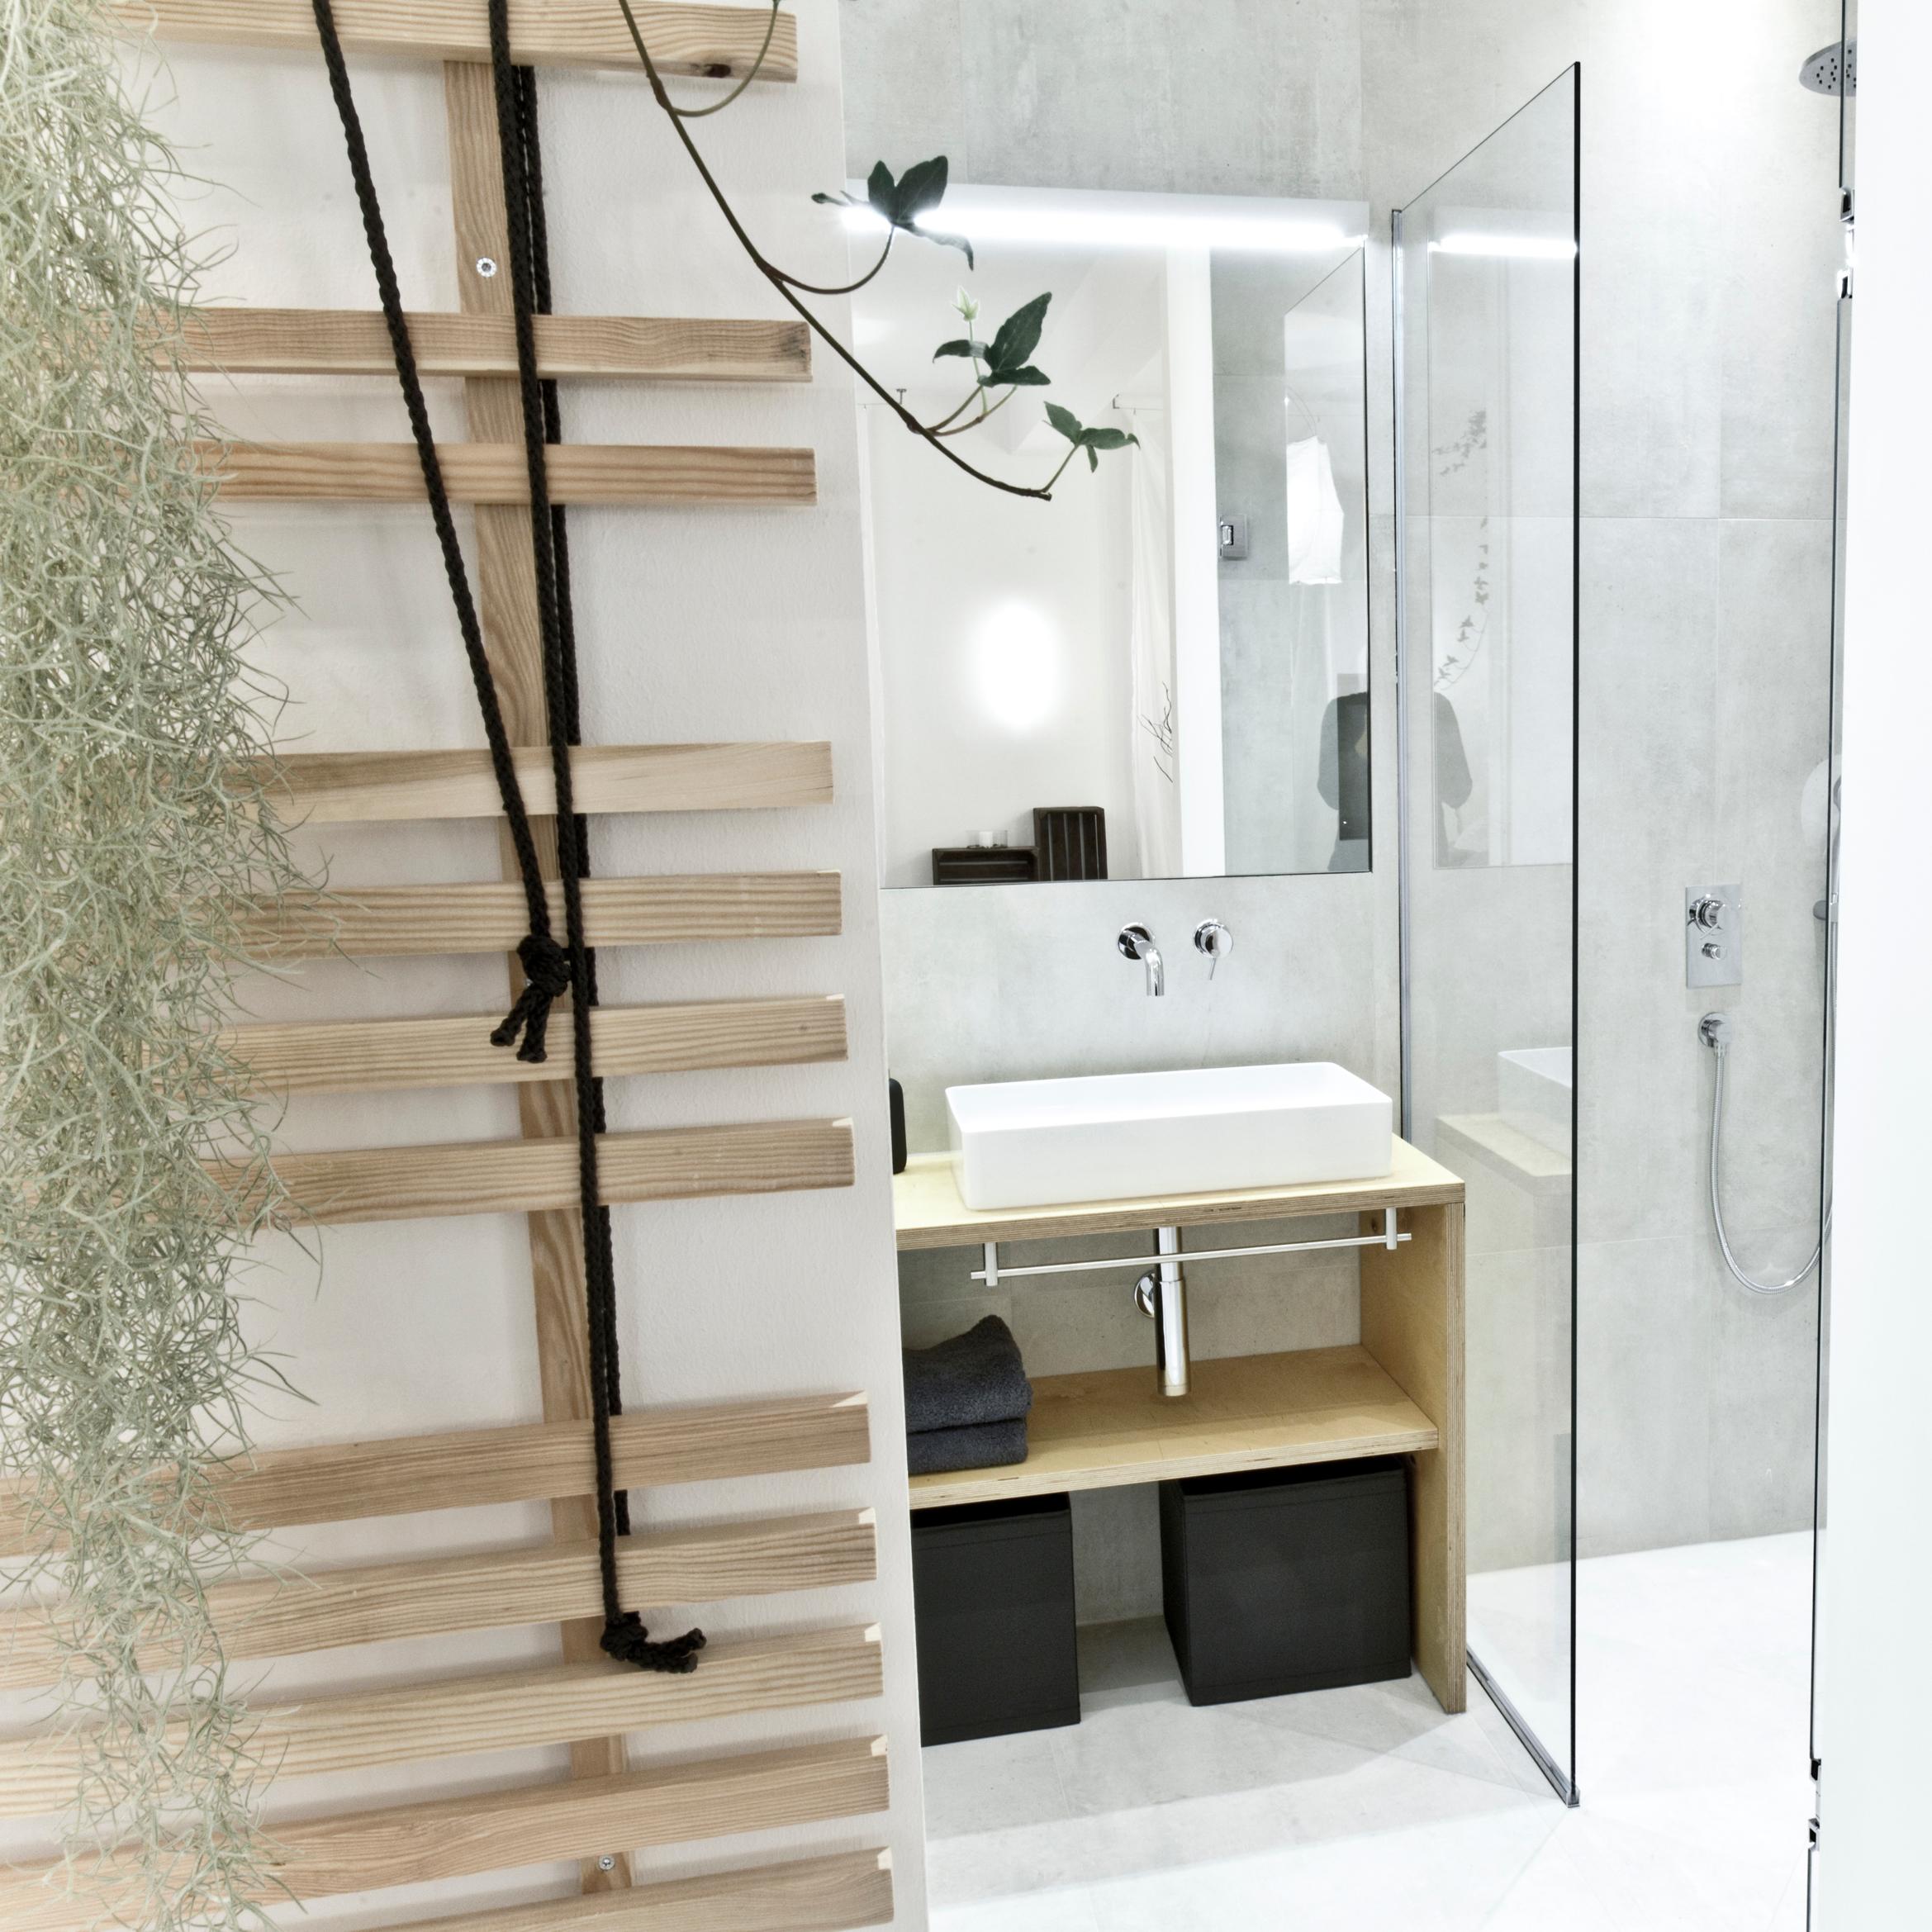 Blick von der Badewanne ins Badezimmer #badezimmer #waschtisch #betonfliesen ©Zolaproduction